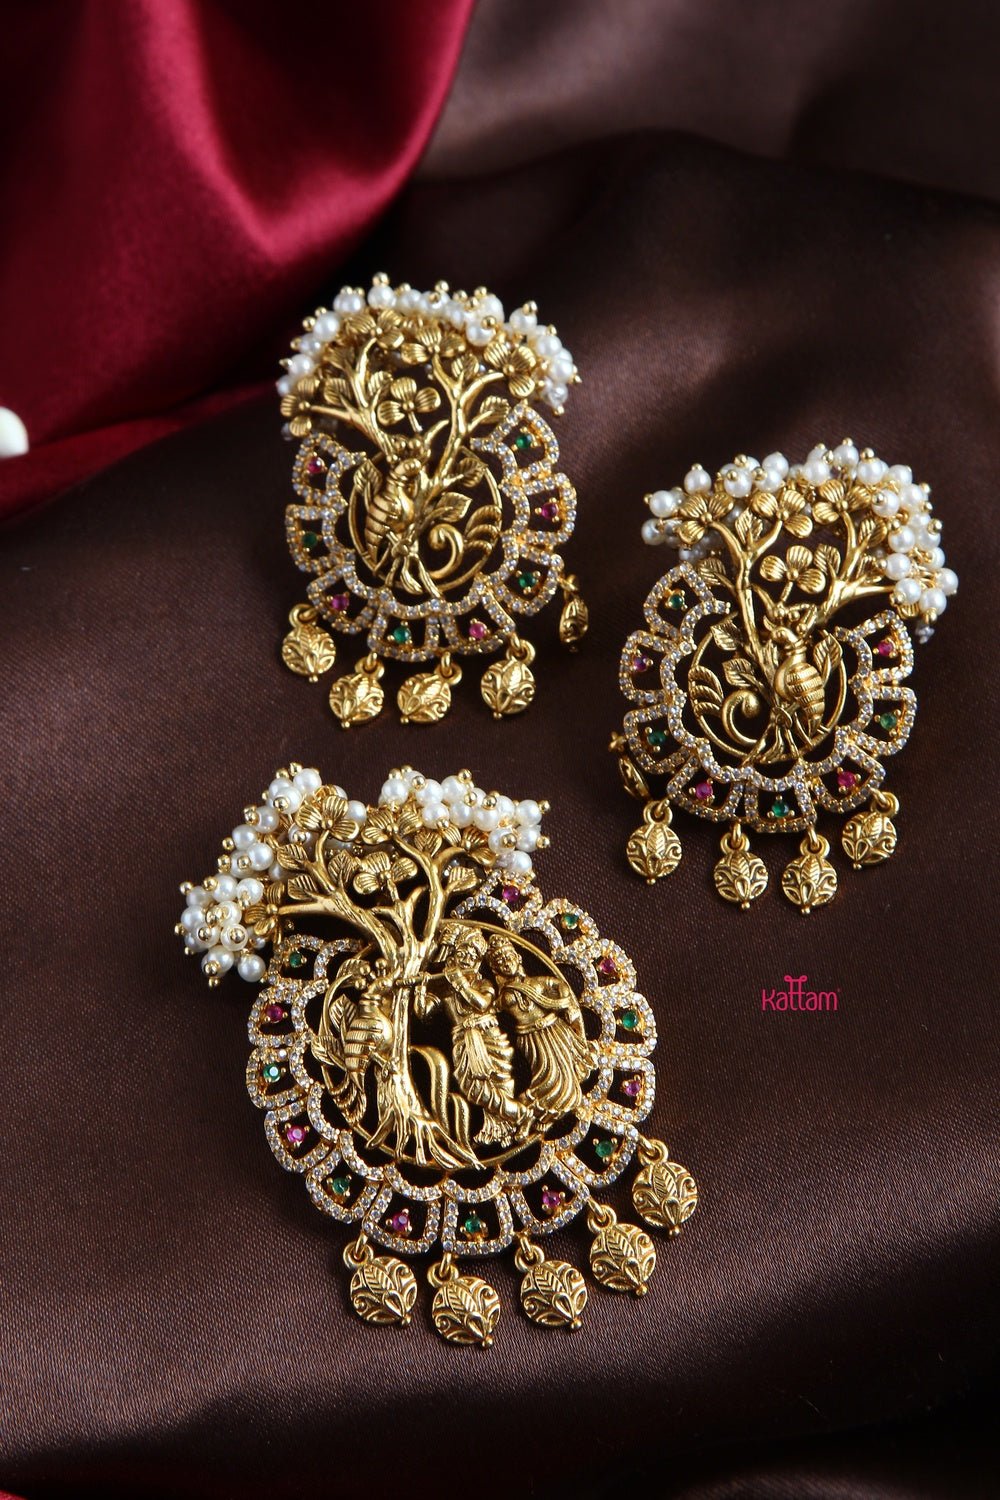 Radha Krishna Dollar Pendant with Earrings - P011